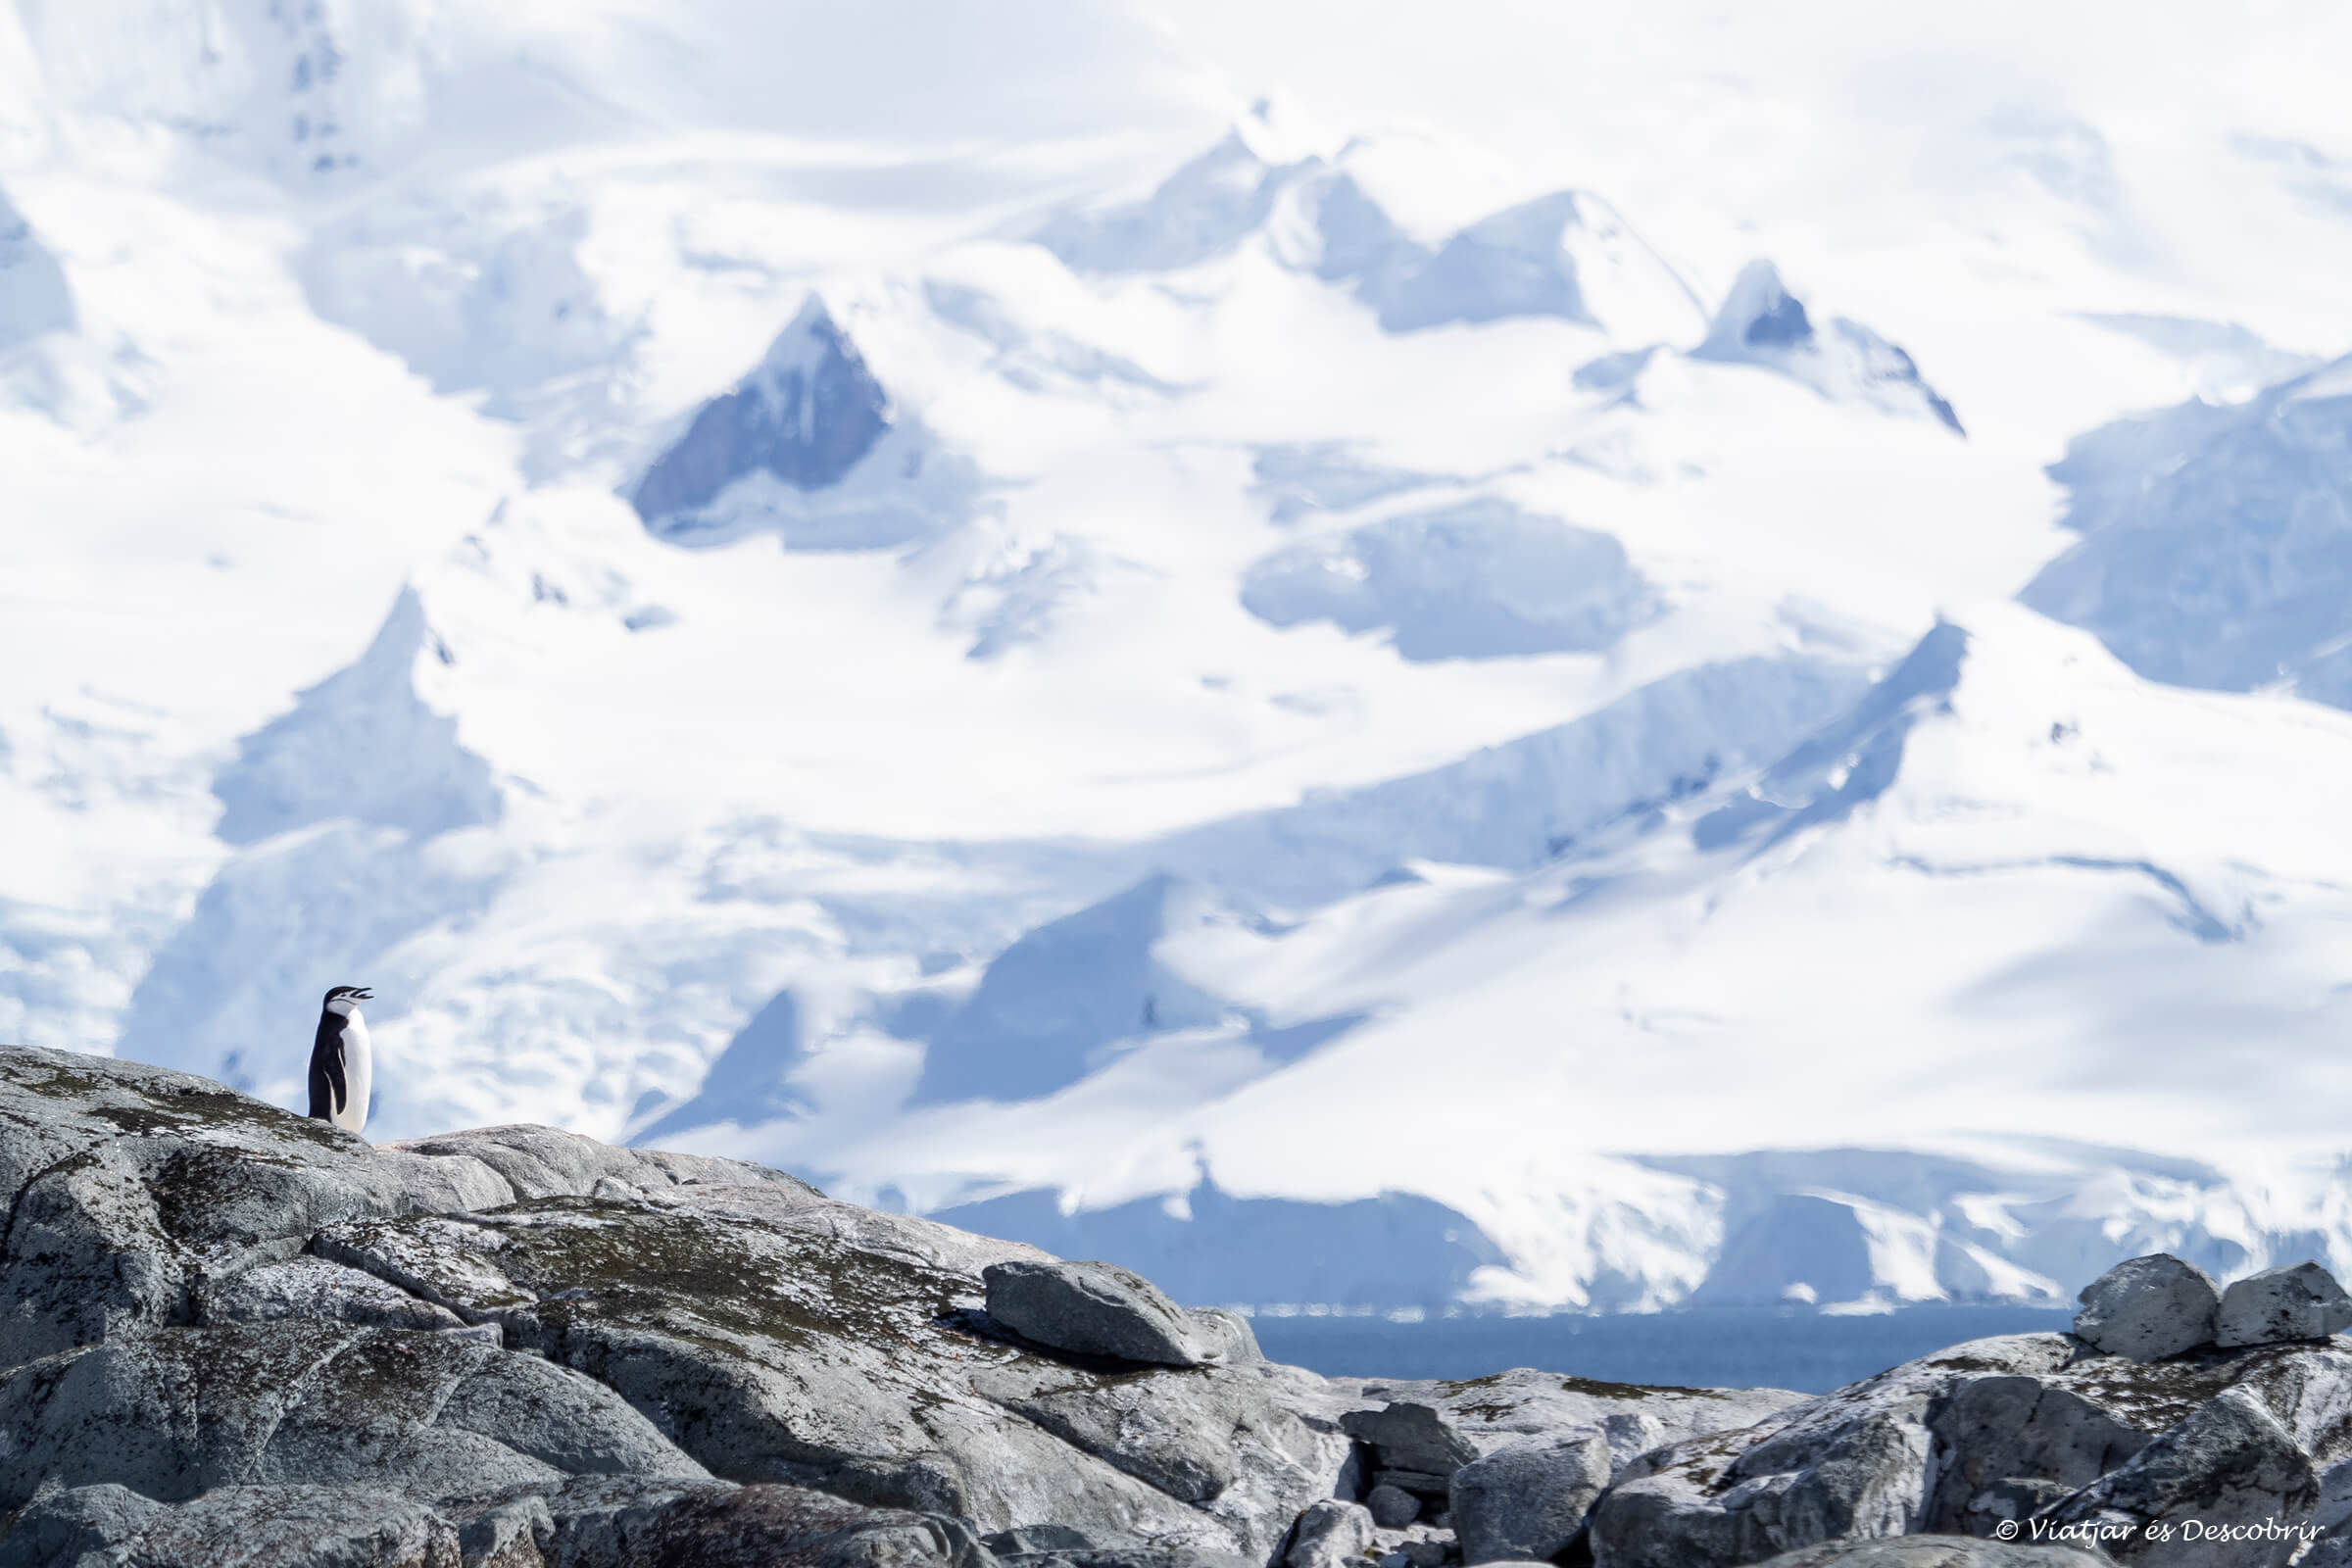 paisaje nevado y un pingüino en una escena que se puede encontrar al viajar a la Antártida